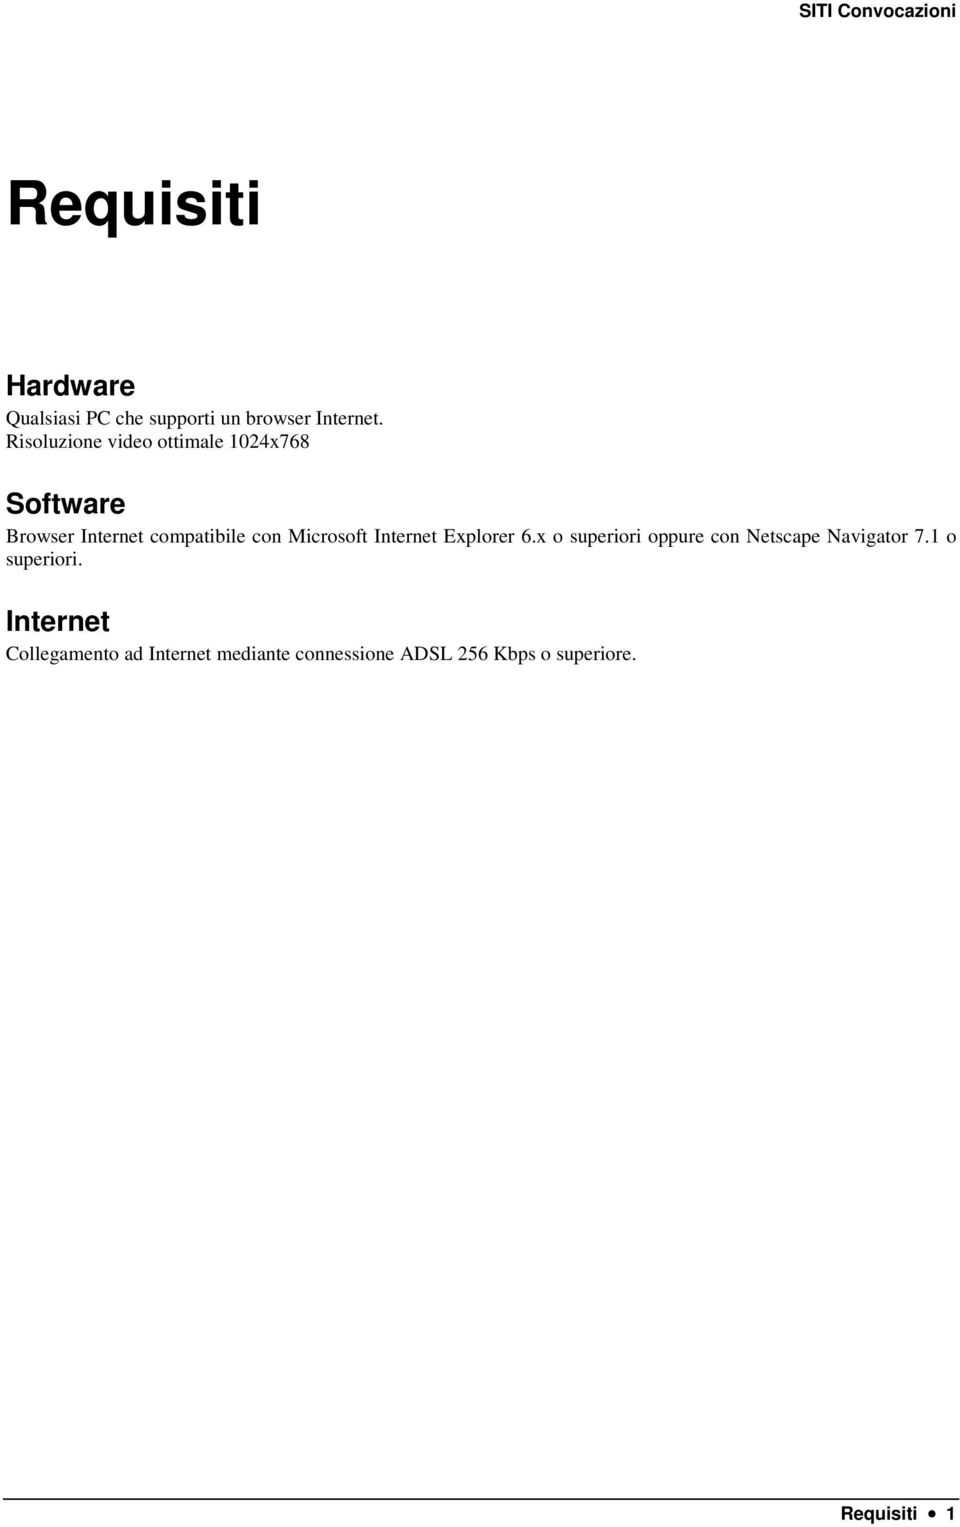 Microsoft Internet Explorer 6.x o superiori oppure con Netscape Navigator 7.